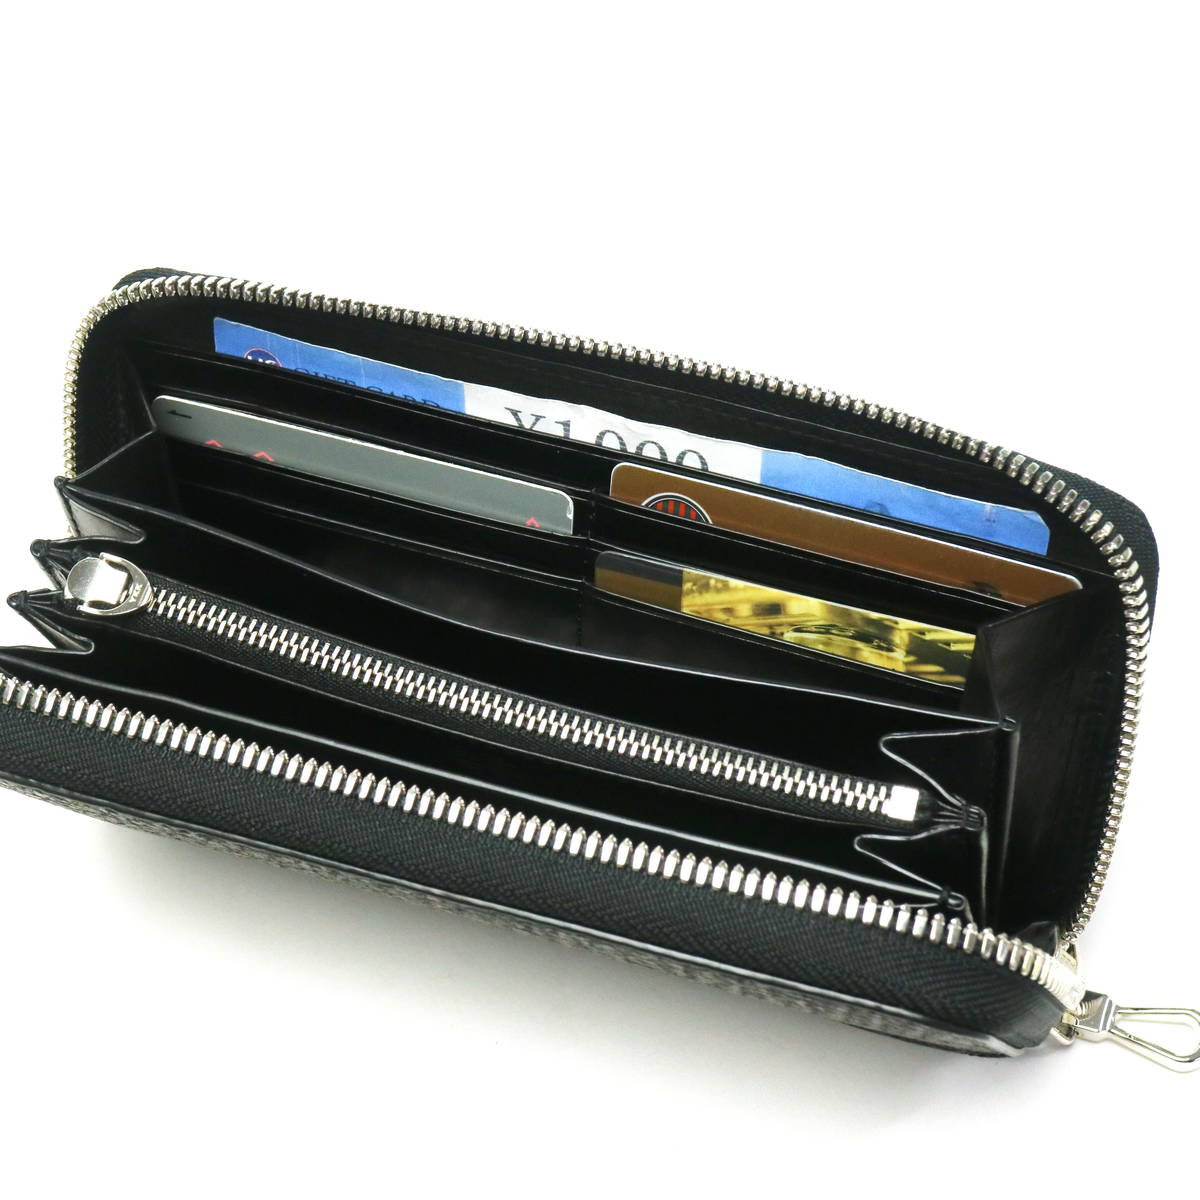 KUBERA 9981【 BASIC 】ラウンドファスナー ミニ財布 - 財布